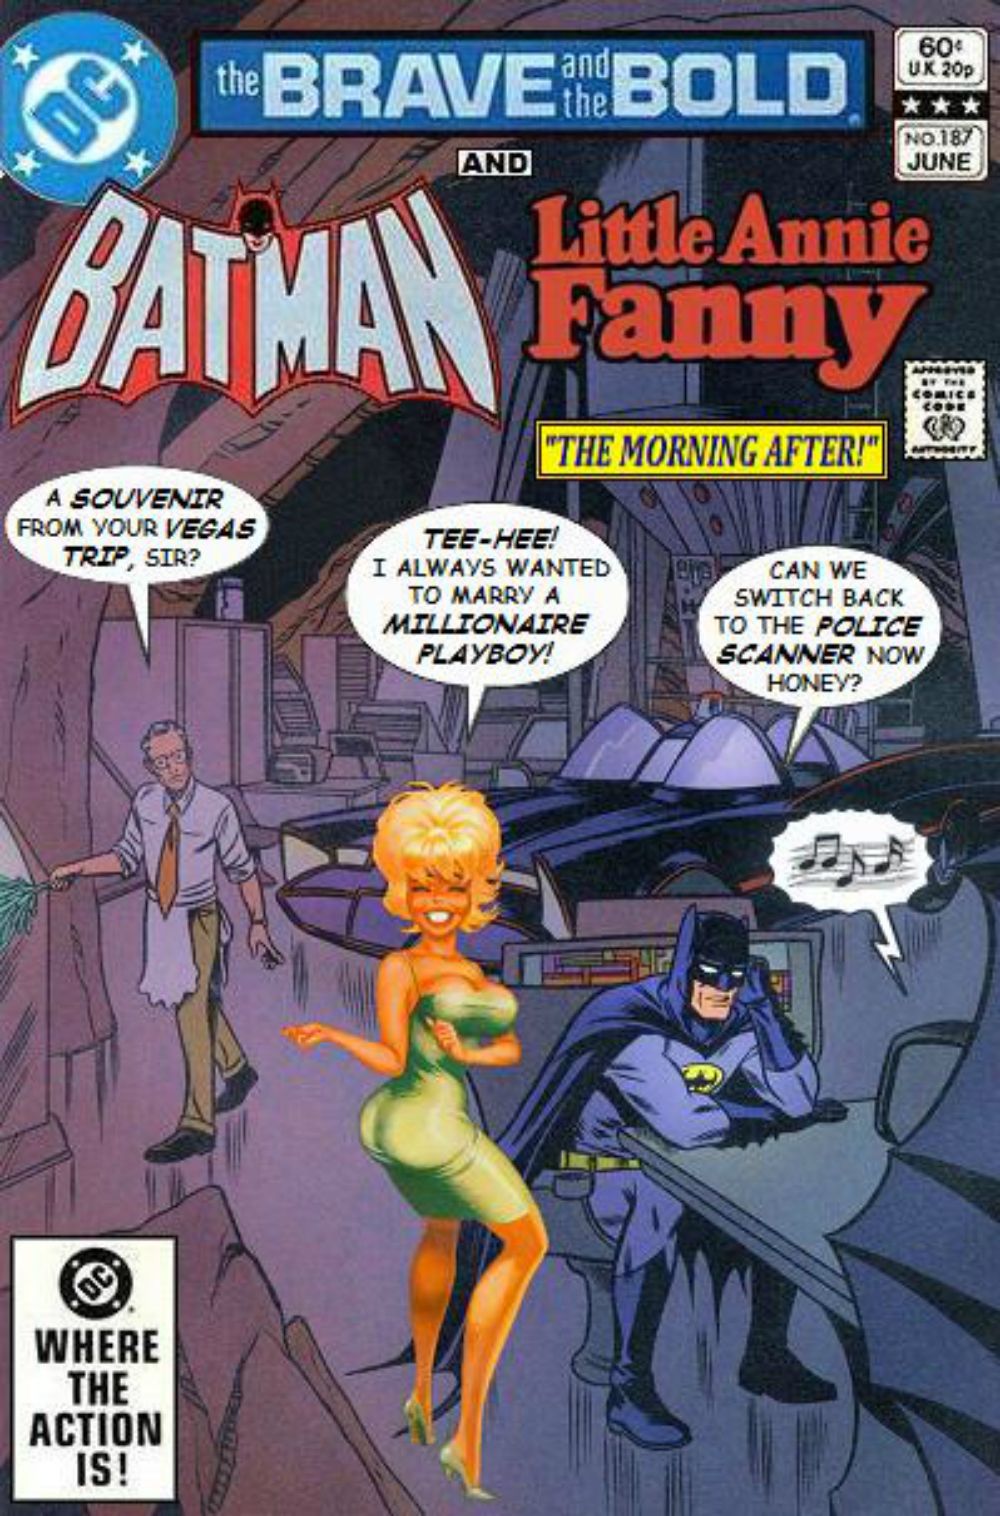 super-team-family-batman-little-annie-fanny